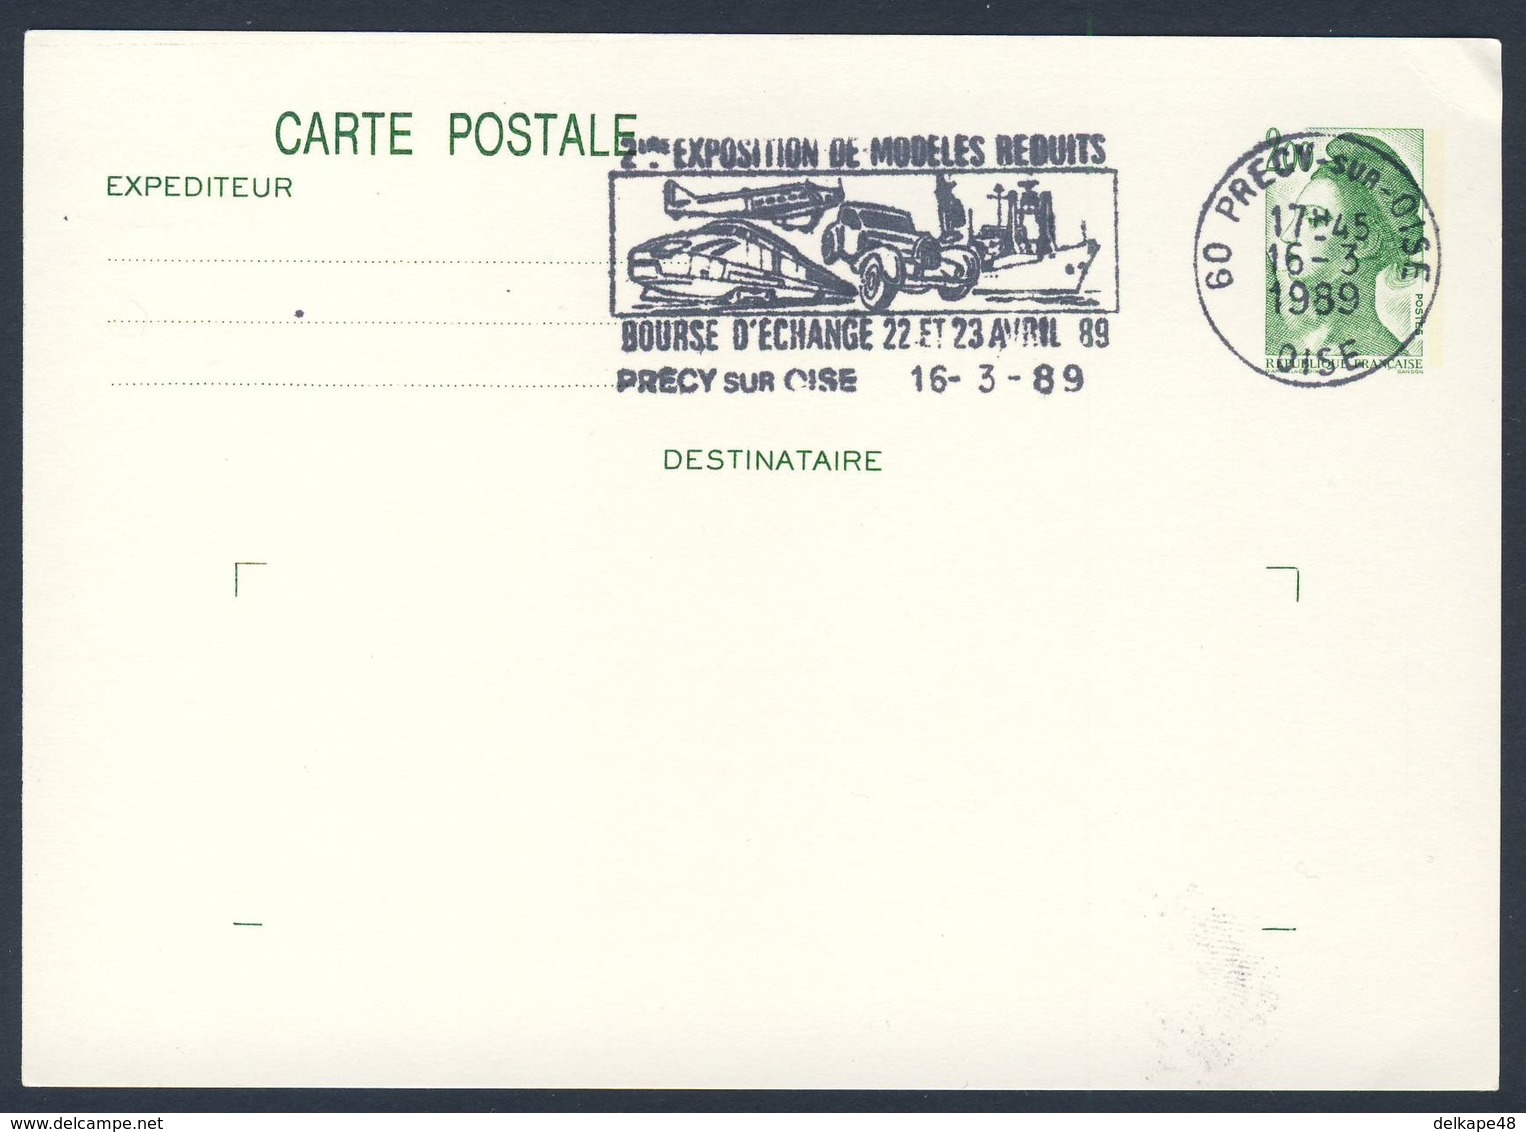 France Rep. Française 1989 Card Karte Carte - 2e Exp. Modeles Reduits, Bourse D'Echange, Précy Sur Oise / Ausstellung - Trenes